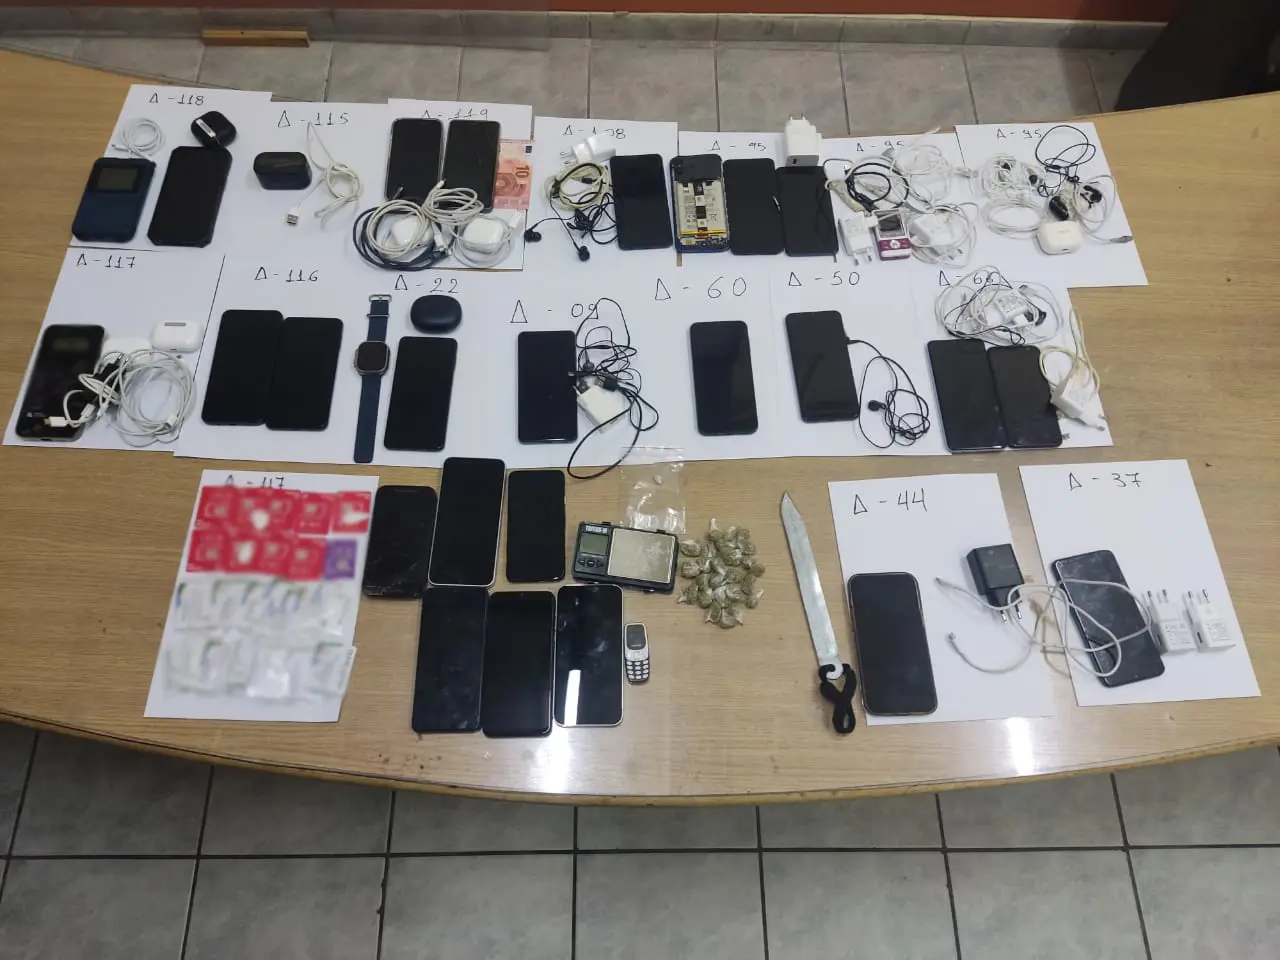 Έφοδος της ΕΛ.ΑΣ. στις φυλακές Κορυδαλλού - Βρέθηκαν κινητά και ναρκωτικά